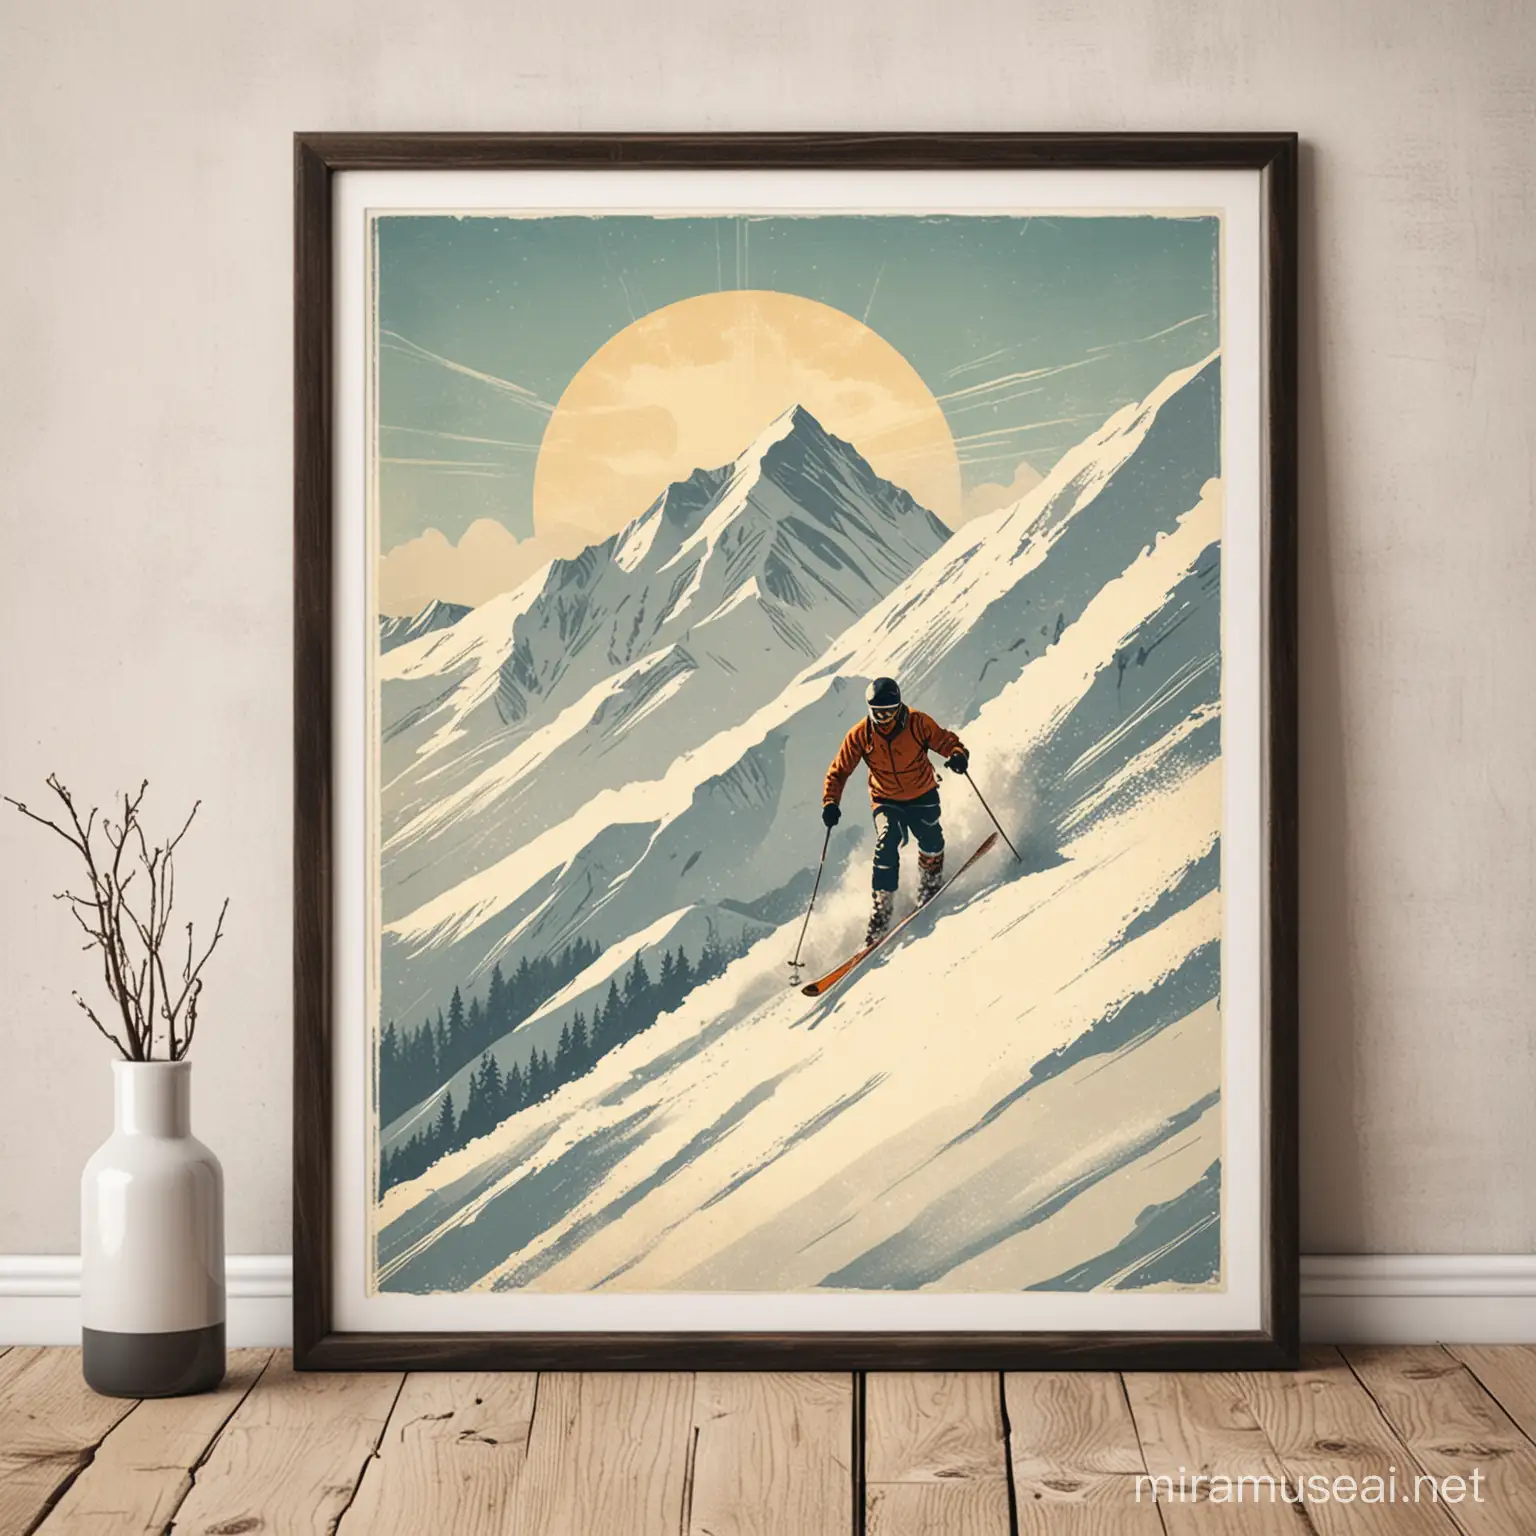 Simple retro ski art print of a skier skiing down a mountain 